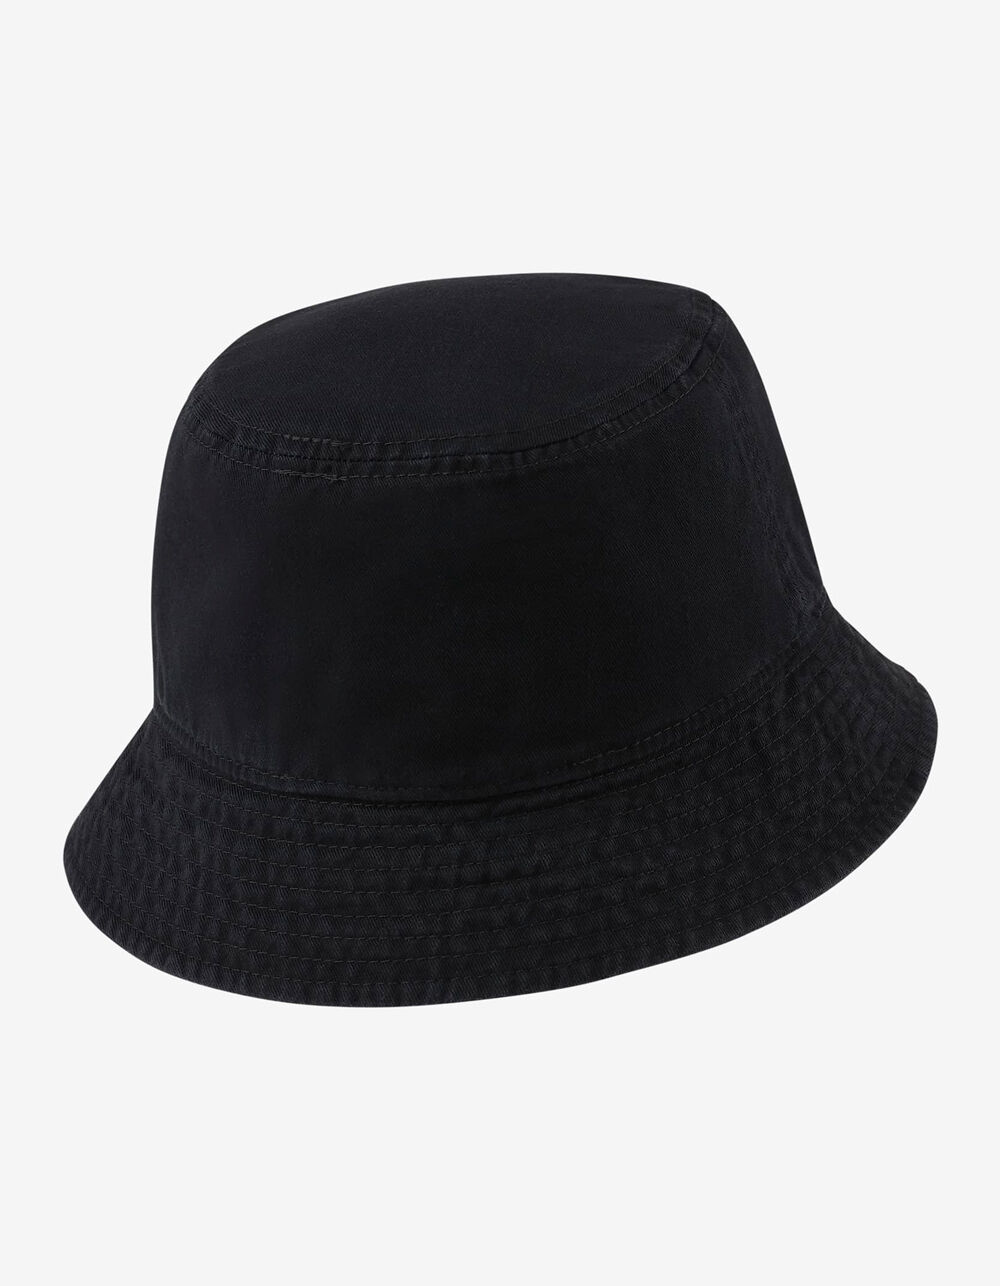 NIKE Futura Bucket Hat - BLACK | Tillys